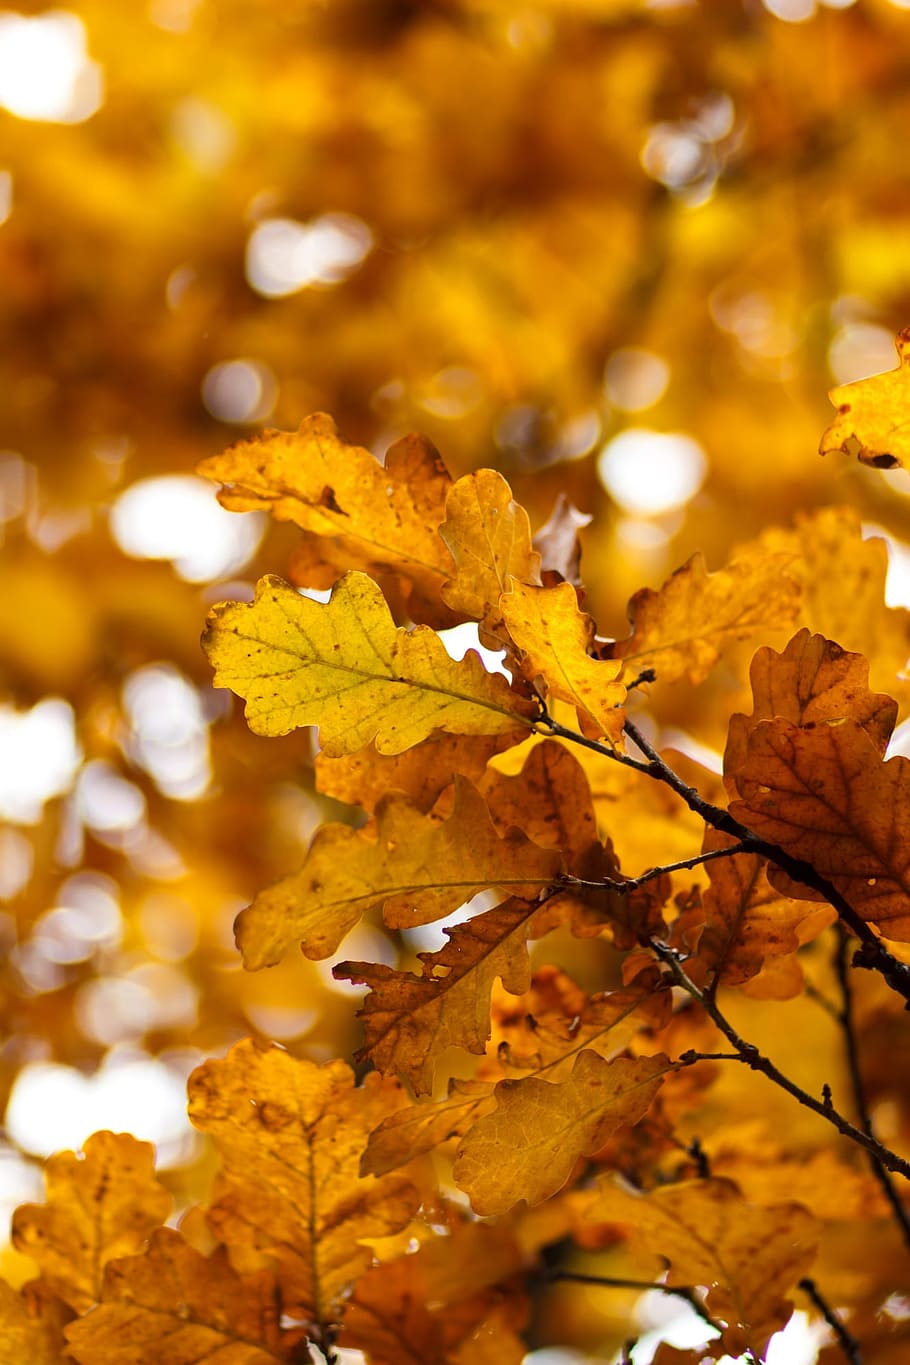 yellow sheet, autumn, oak, oak leaf, listopad, yellow leaves, golden autumn, leaves, autumn leaf, autumn leaves